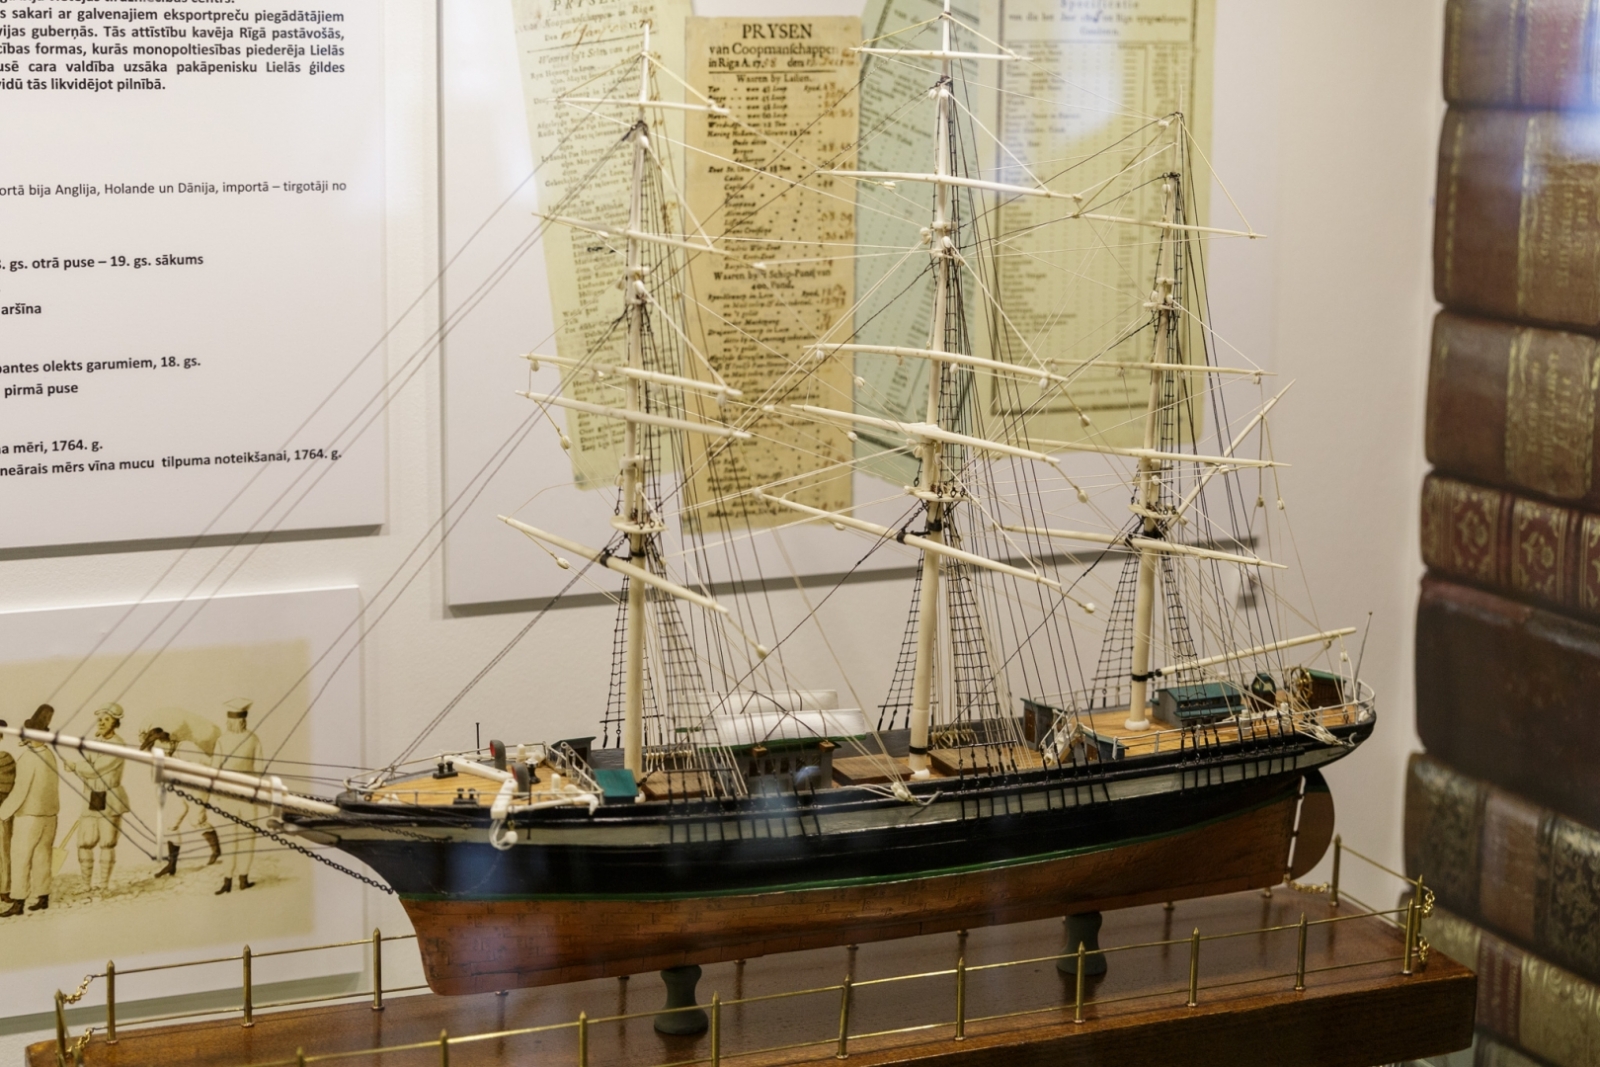 Rīgas Vēstures un kuģniecības muzeja 250 gadu jubilejas mediju pasākums